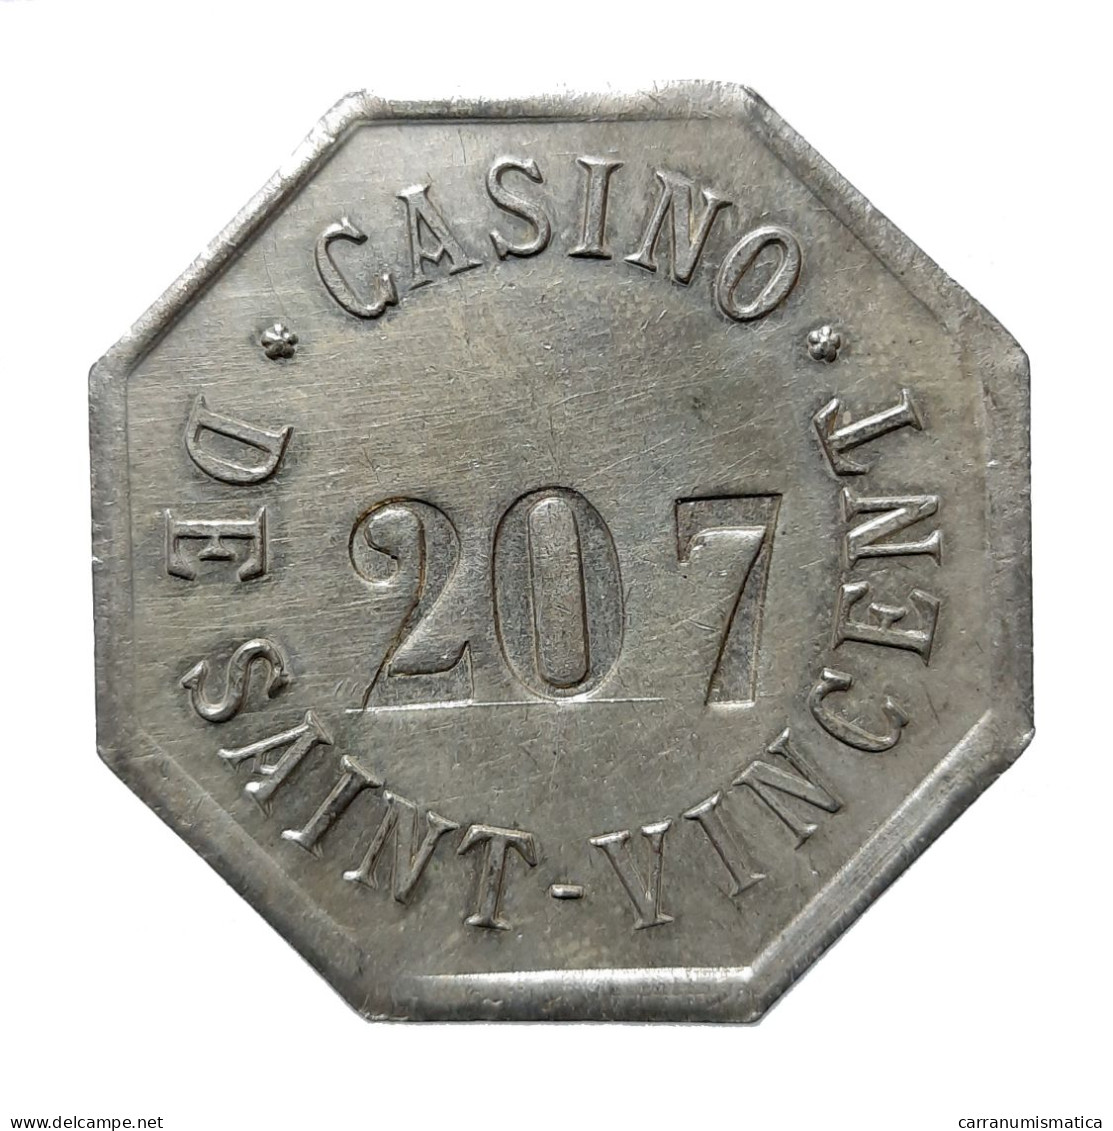 [NC] Casinò De SAINT VINCENT (AOSTA) - CHIP / FICHE / TOKEN VALORE 100 - CuNi (nc8557) - Casino